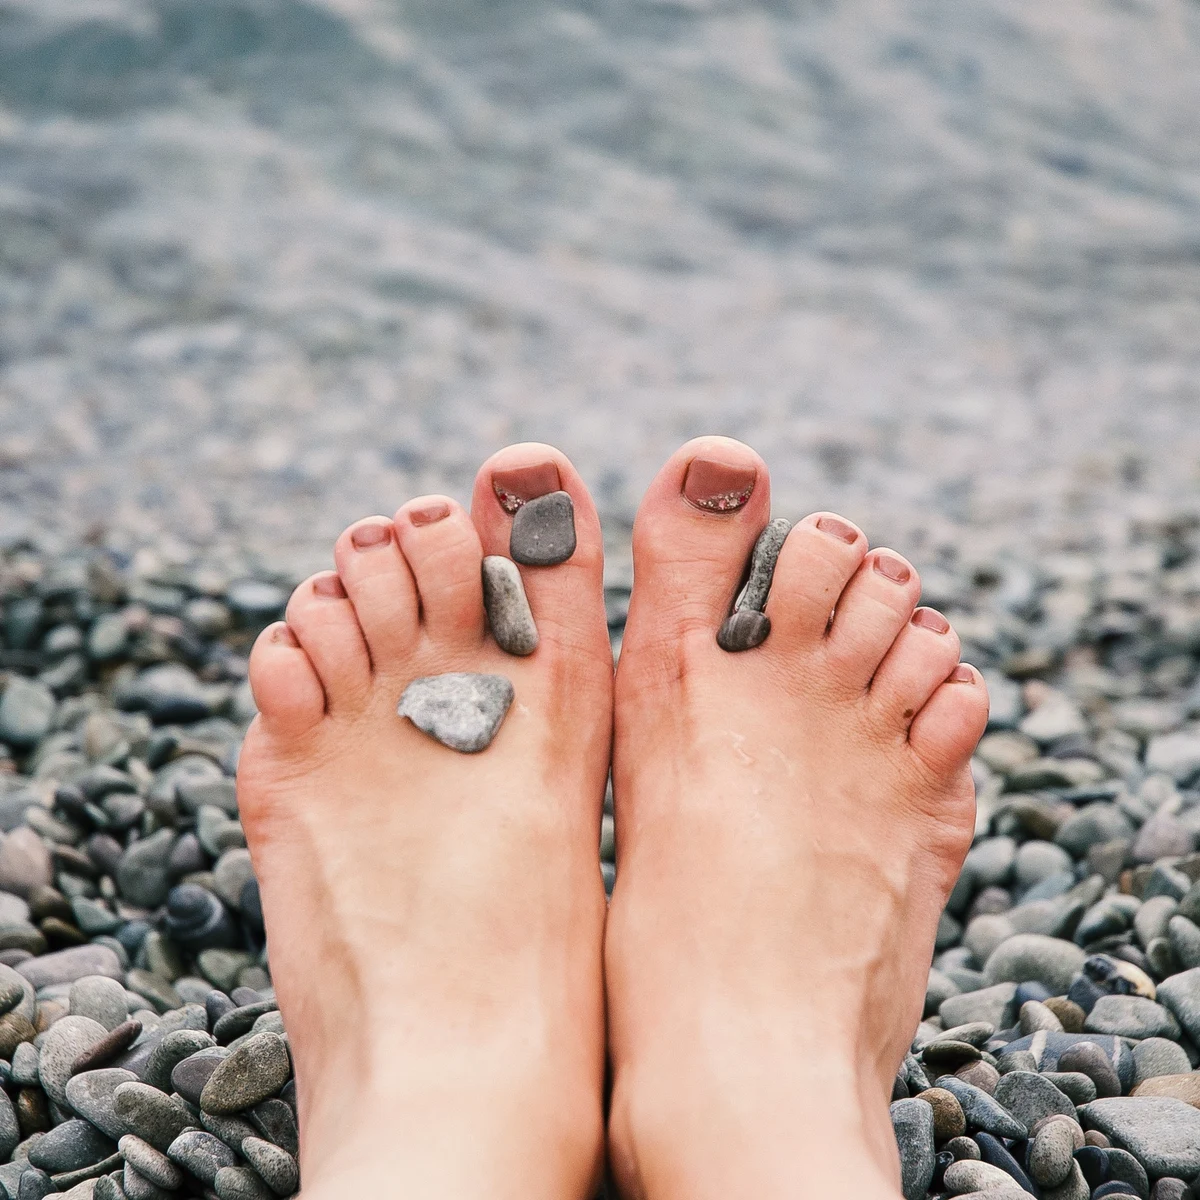 Calzado Barefoot - Diferencia entre un zapato convencional y uno respetuoso  con el pie. Si le damos a los dedos el espacio que necesitan, evitaremos  que se apiñen, evitando futuros problemas (juanetes